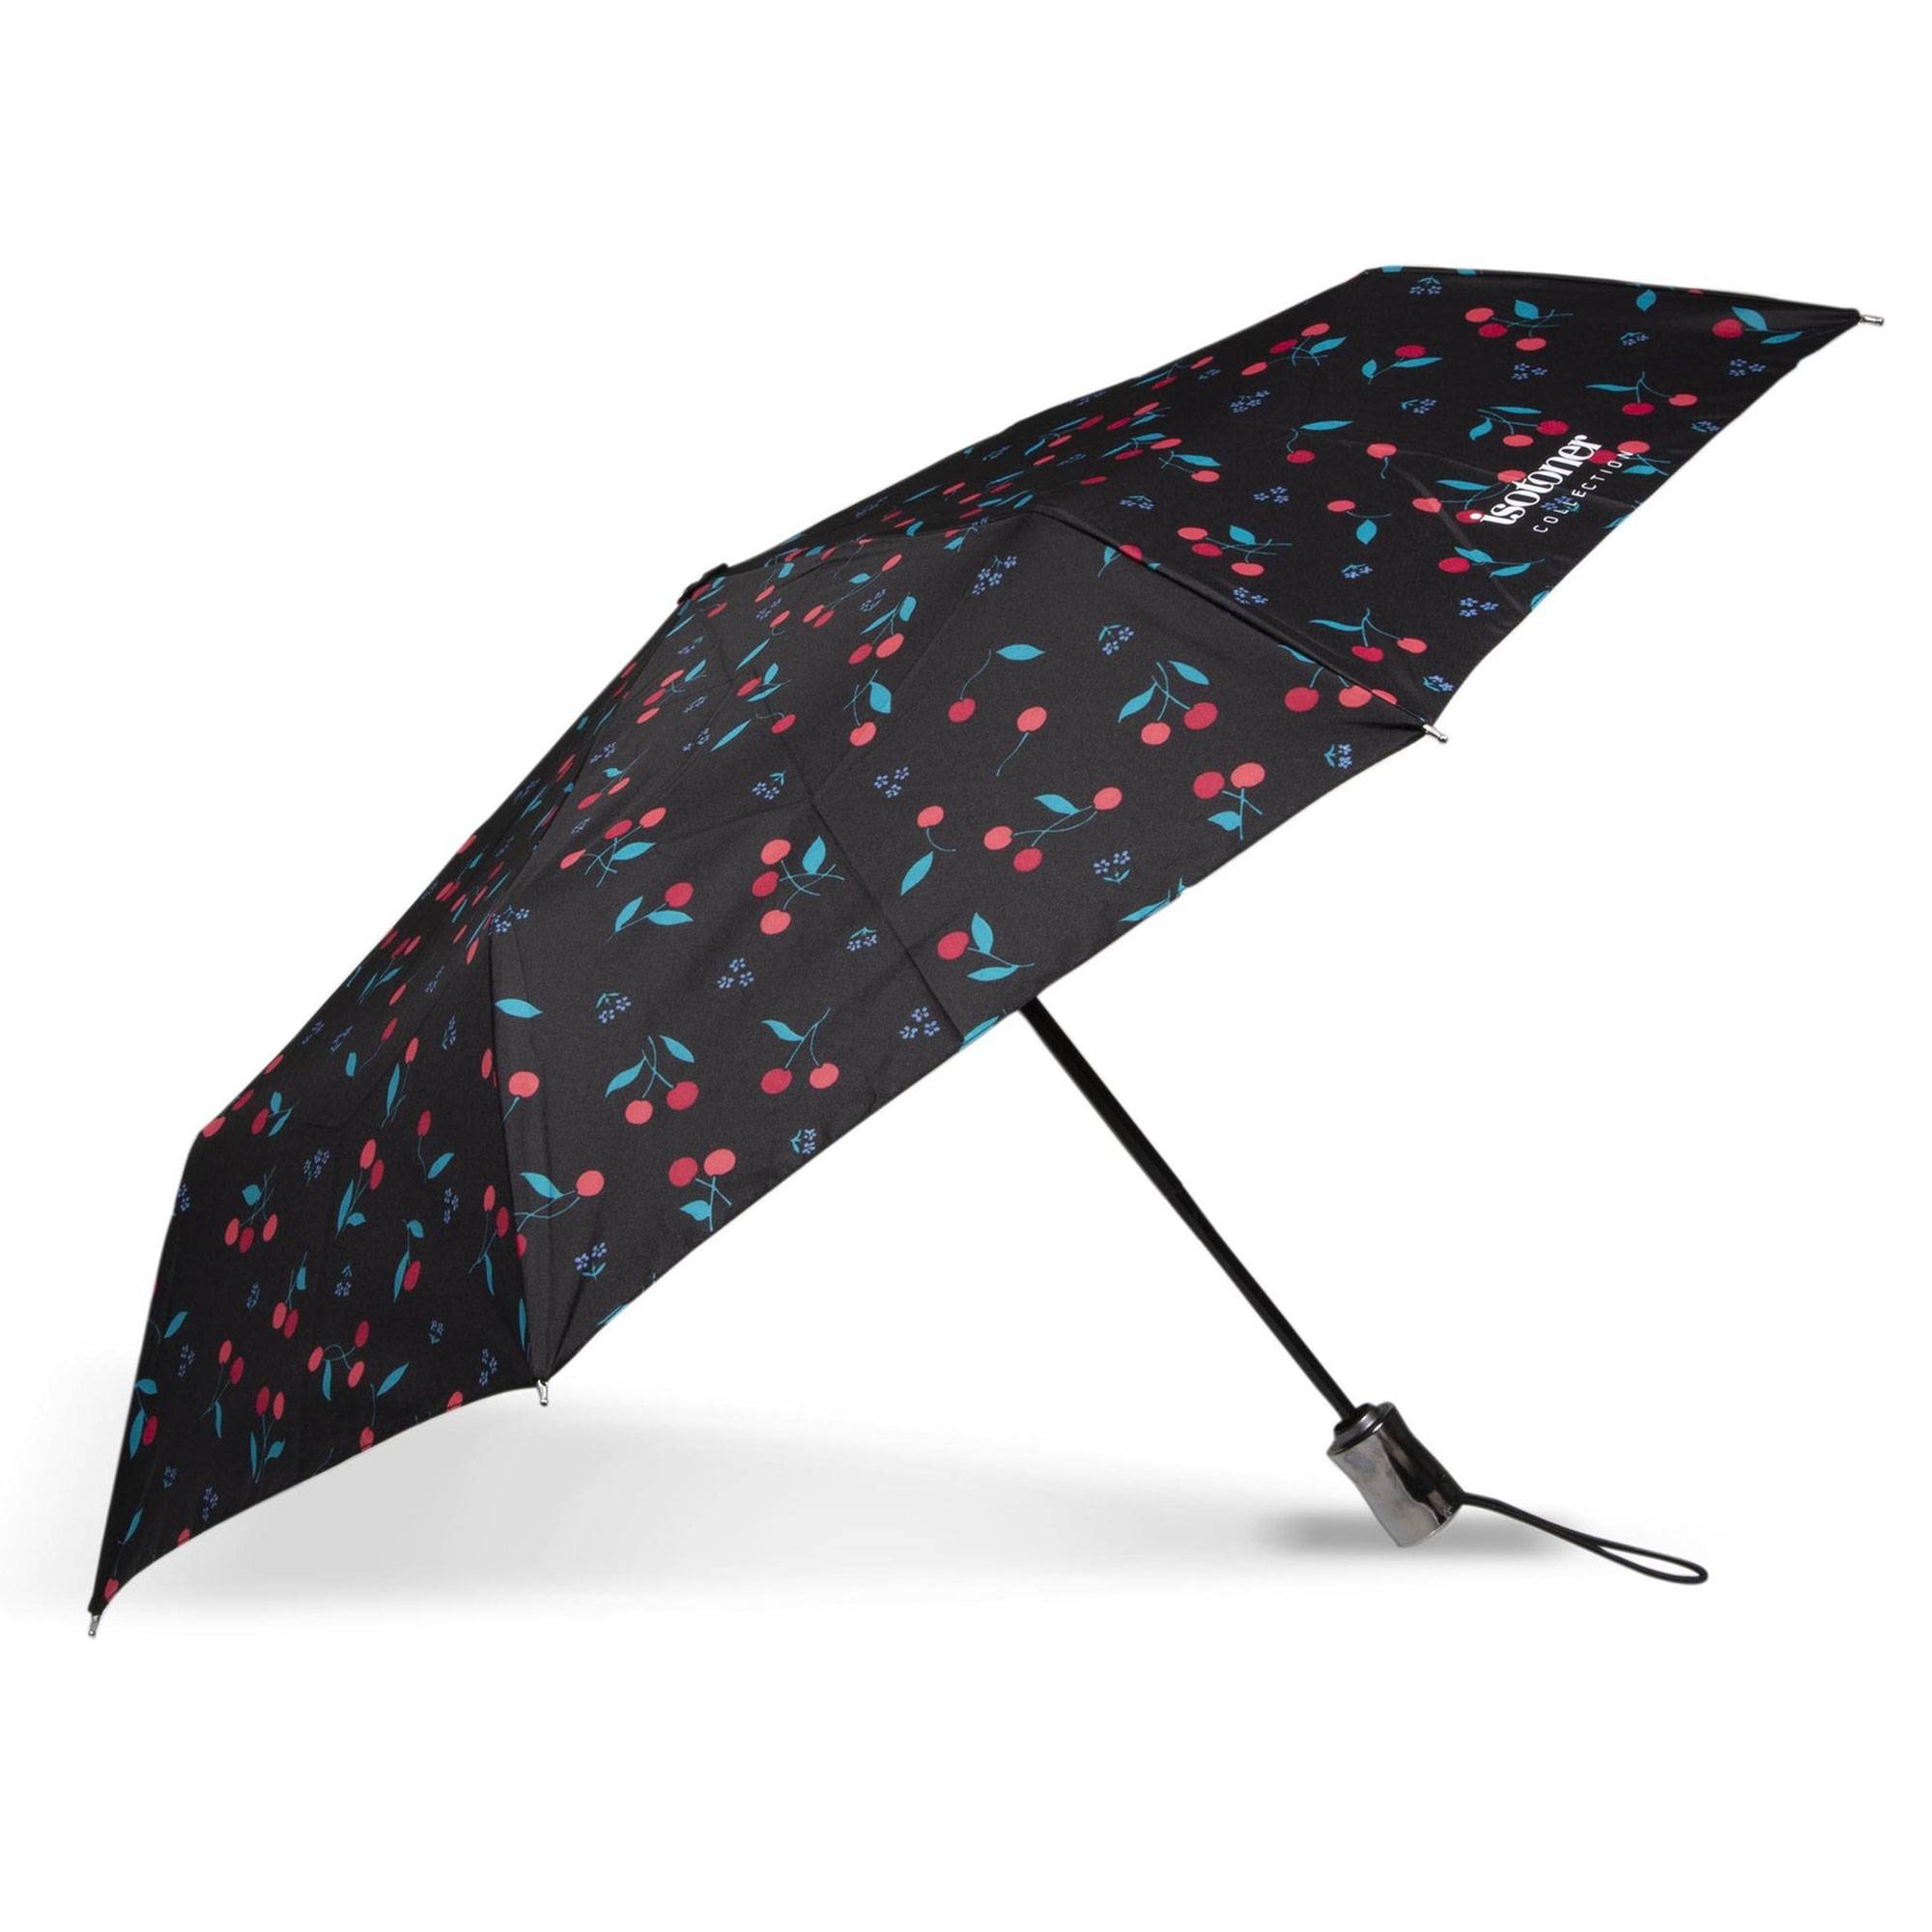 Parapluie Automatique Isotoner 09406 DCP couleur Pois Cerise Rose, ouvert